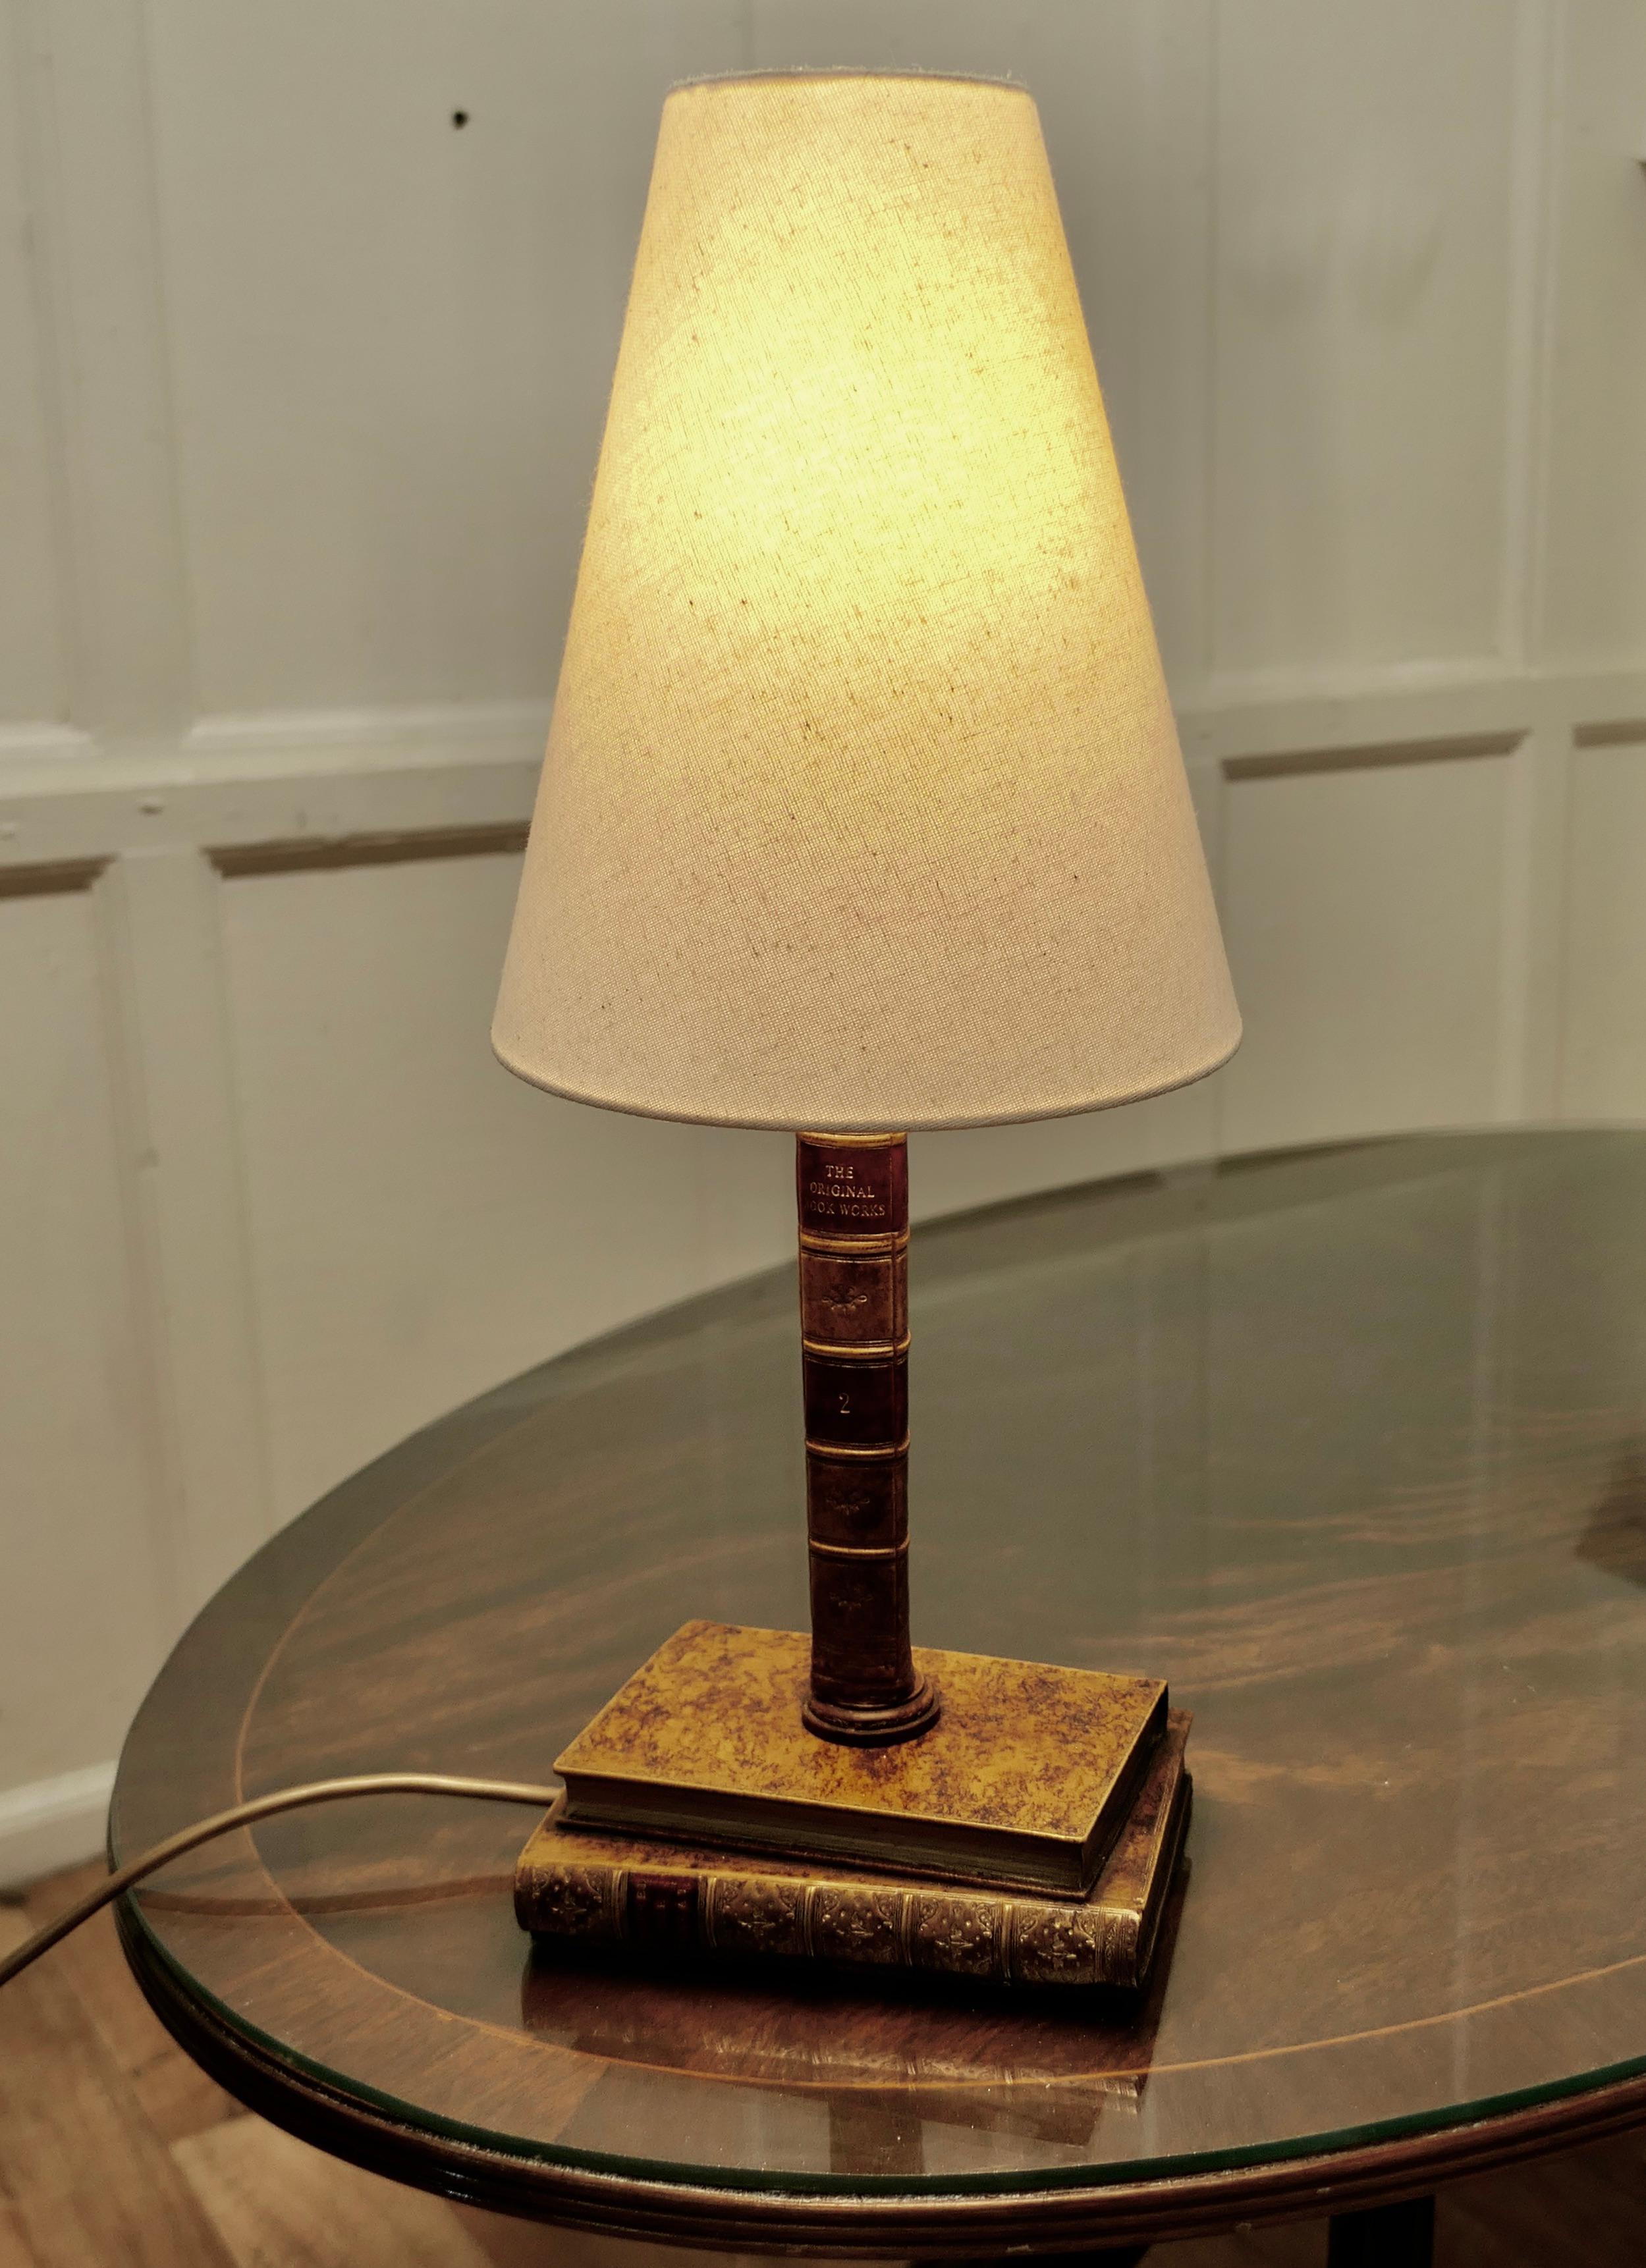 Vintage Novelty Keramik Trompe-L'oeil Schreibtischlampe

Die Lampe ist mit keramischen Lederbuchrücken gefertigt, ein lustiges Trompe-L'oeil und ein sehr attraktives Konversationsstück. Es ist in gutem Vintage-Zustand

Die Lampe ist 20